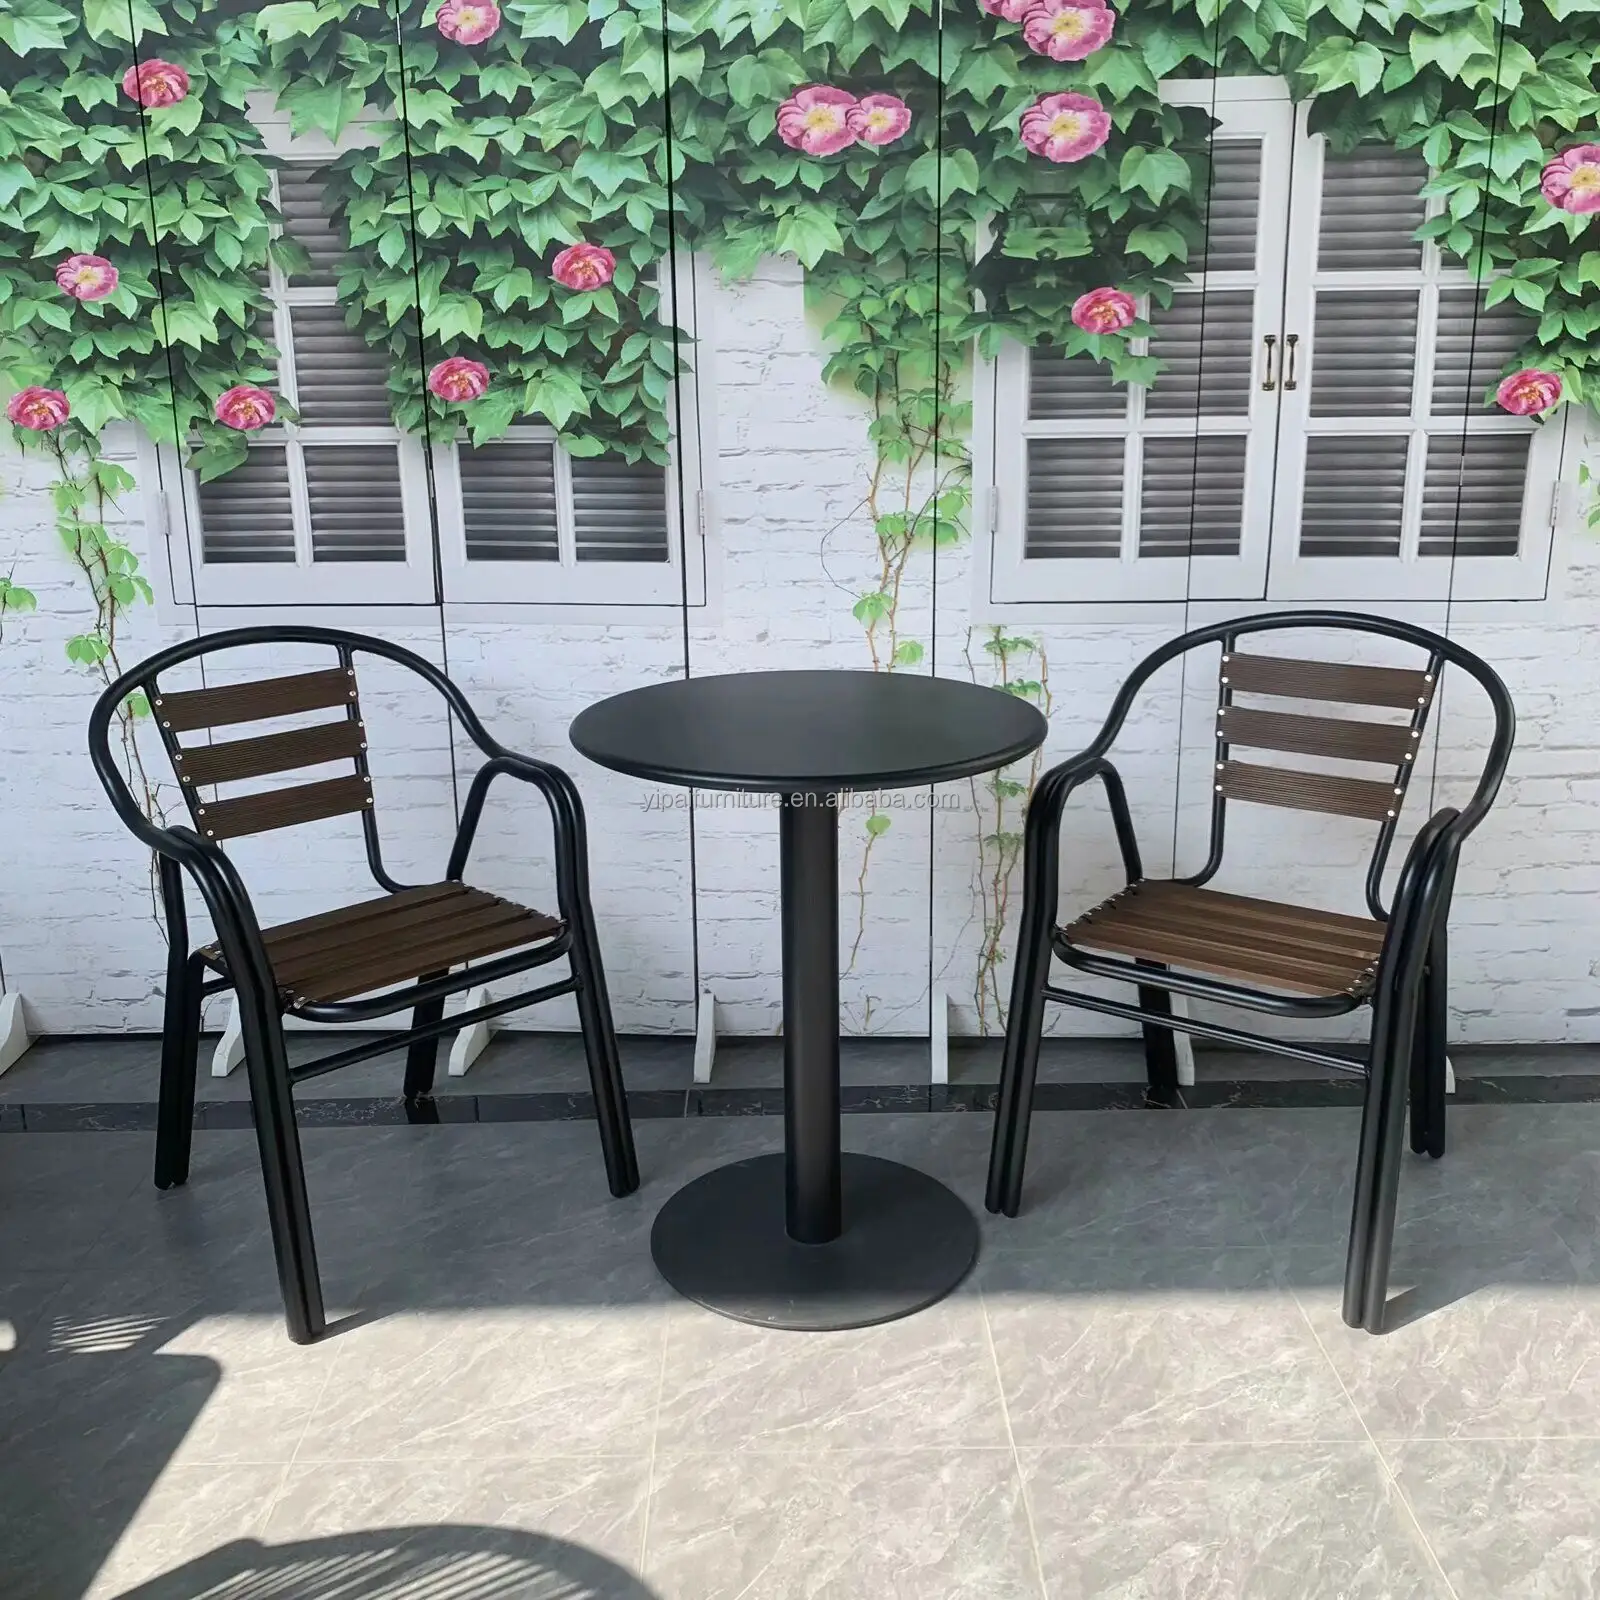 Mesa y silla para exterior Garden Cafe silla de aluminio informal Patio balcón silla de aluminio mesa de acero al carbono pintada con aerosol